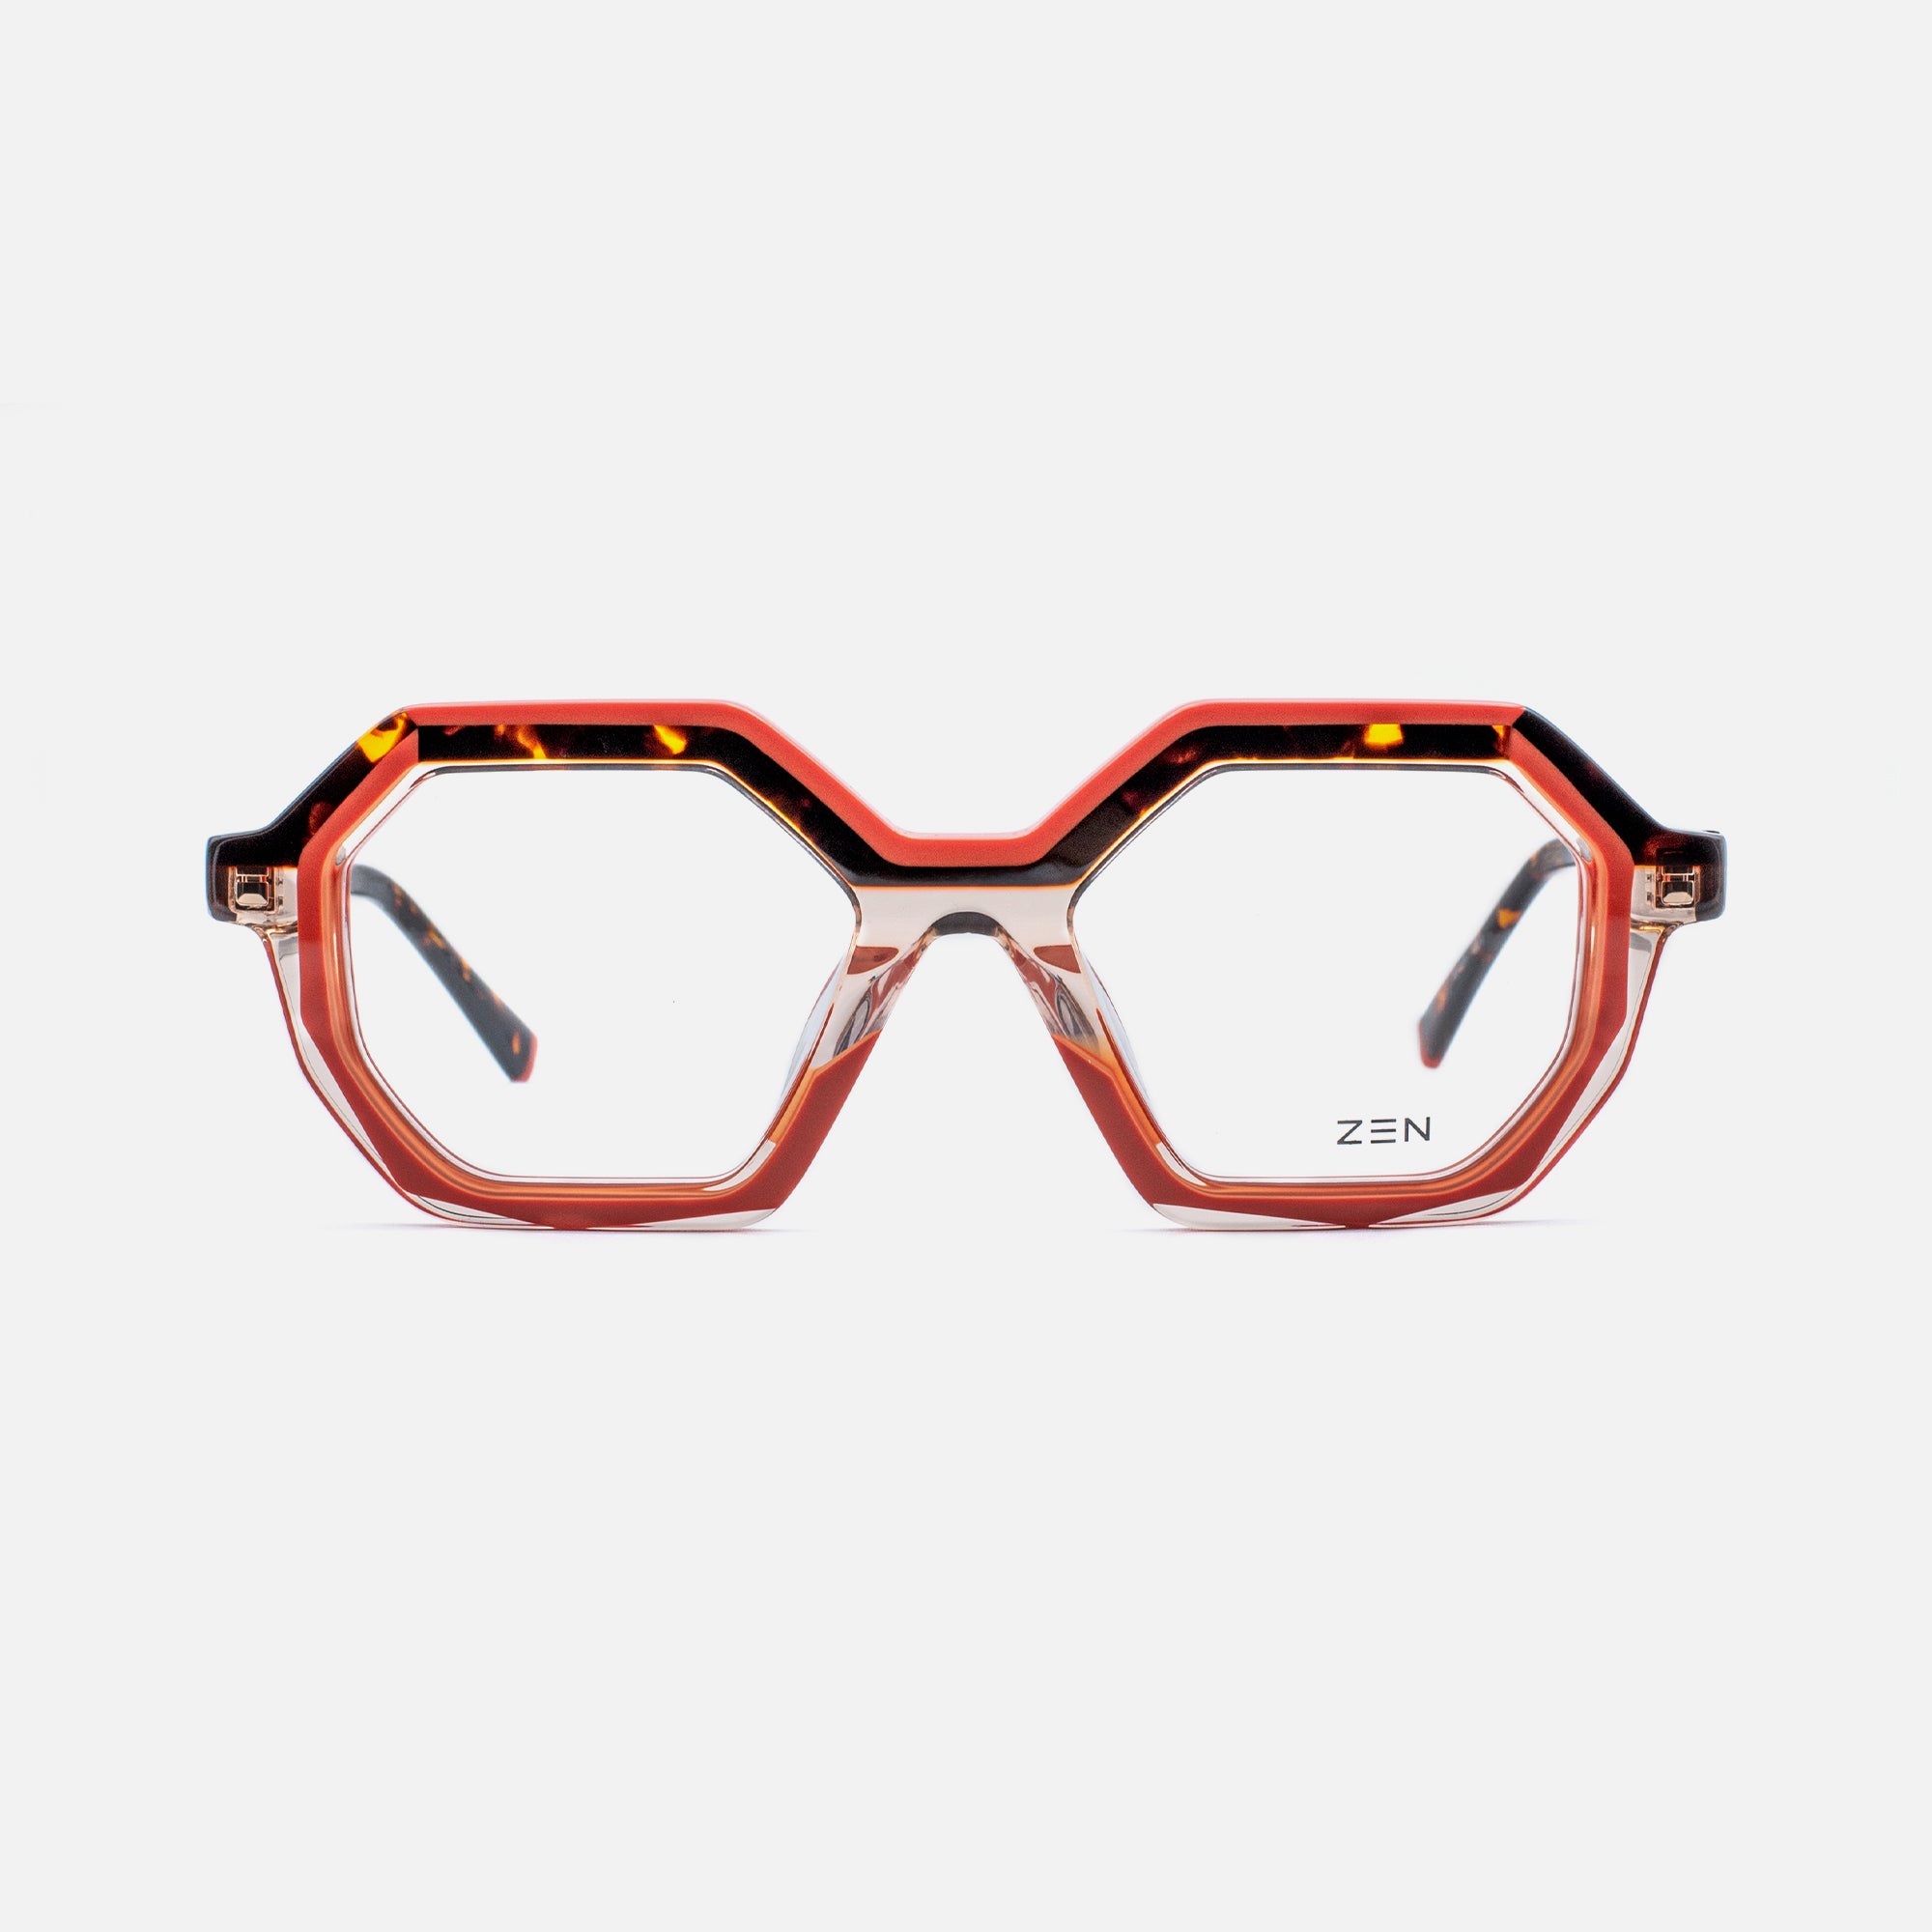 Lacour – Zen Eyewear